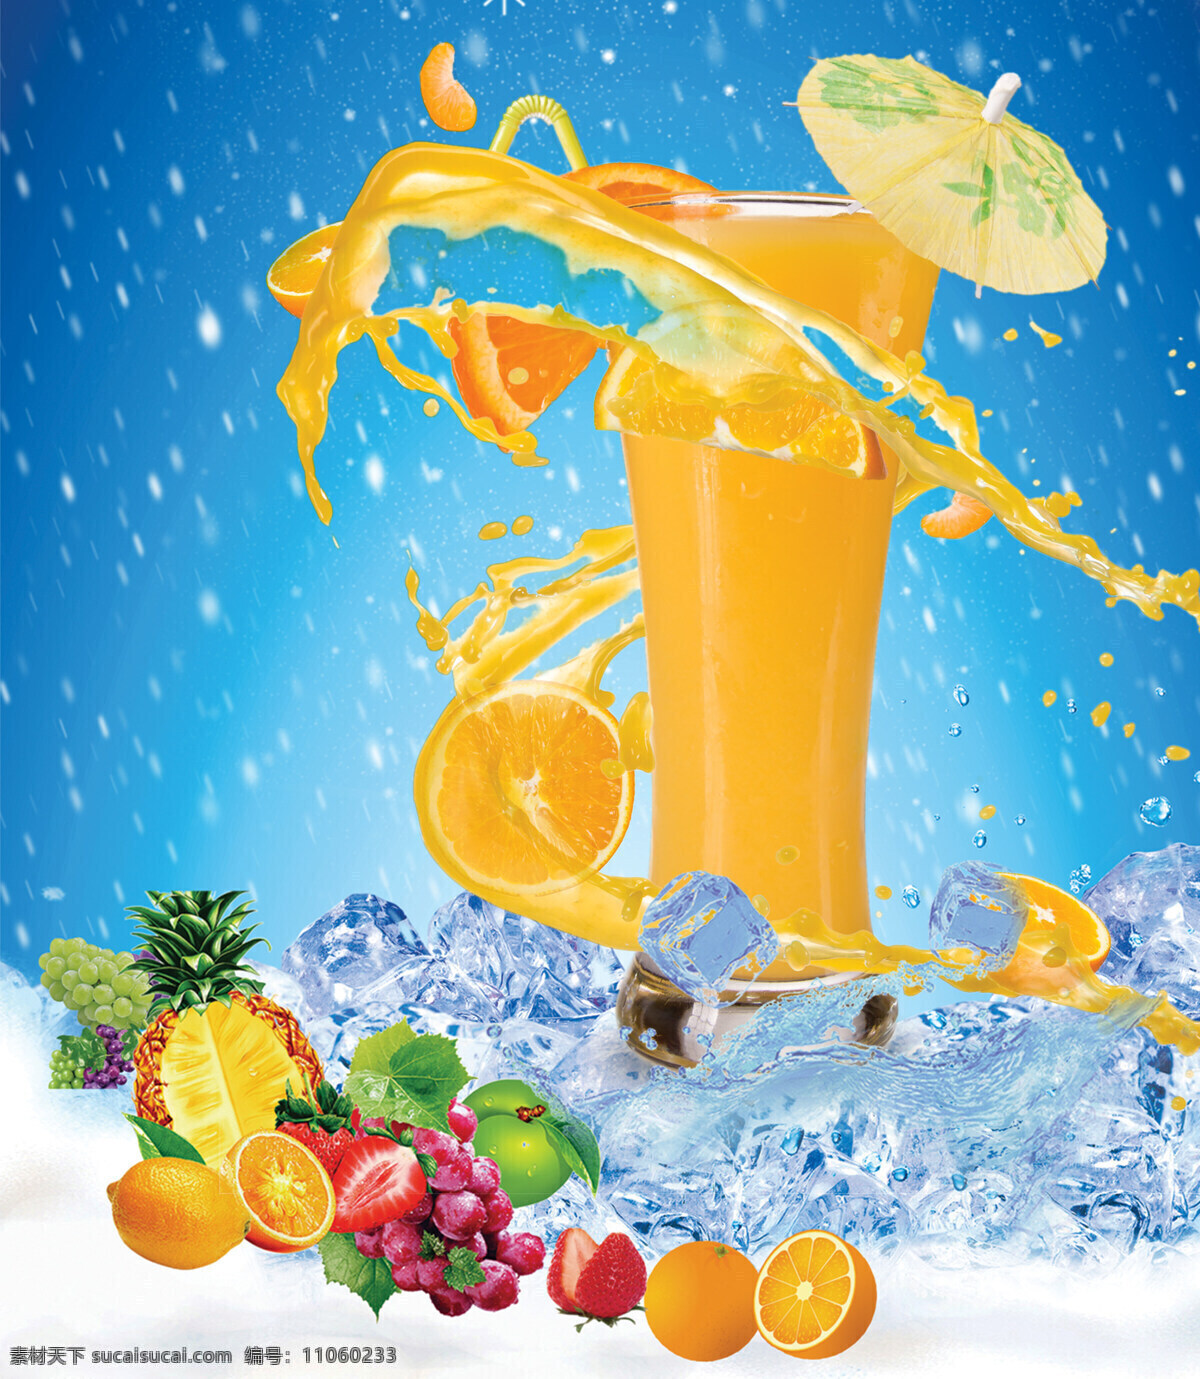 夏日 清爽 果汁 背景 手绘 橙汁 水果 冰块 蓝色